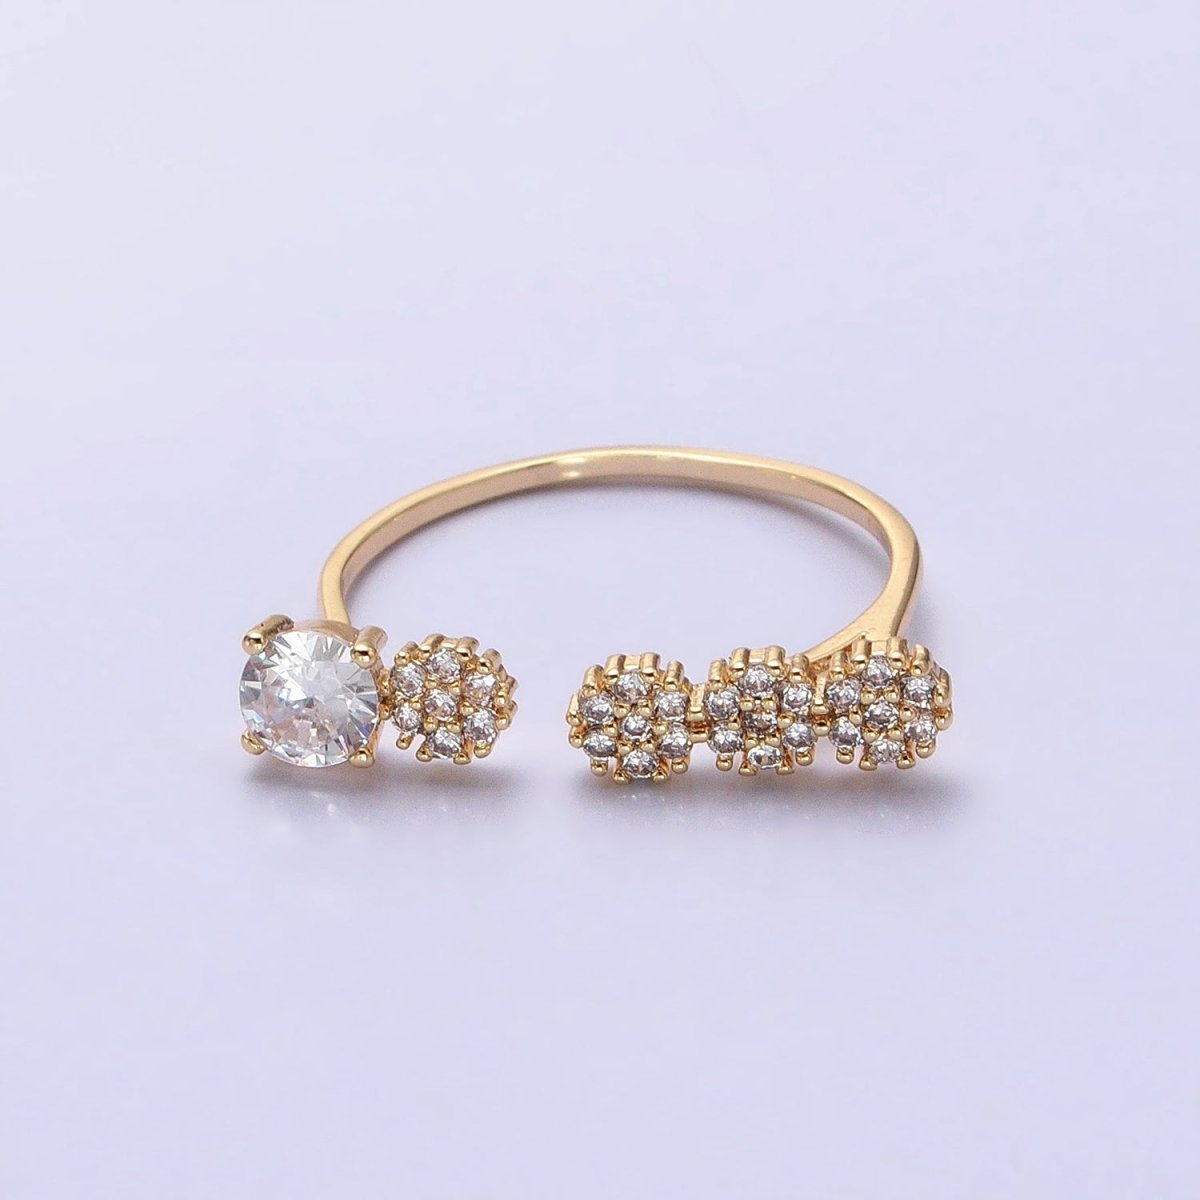 Dainty Gold Ring Five CZ Stone for Minimalist Jewelry O-1805 O-1806 - DLUXCA